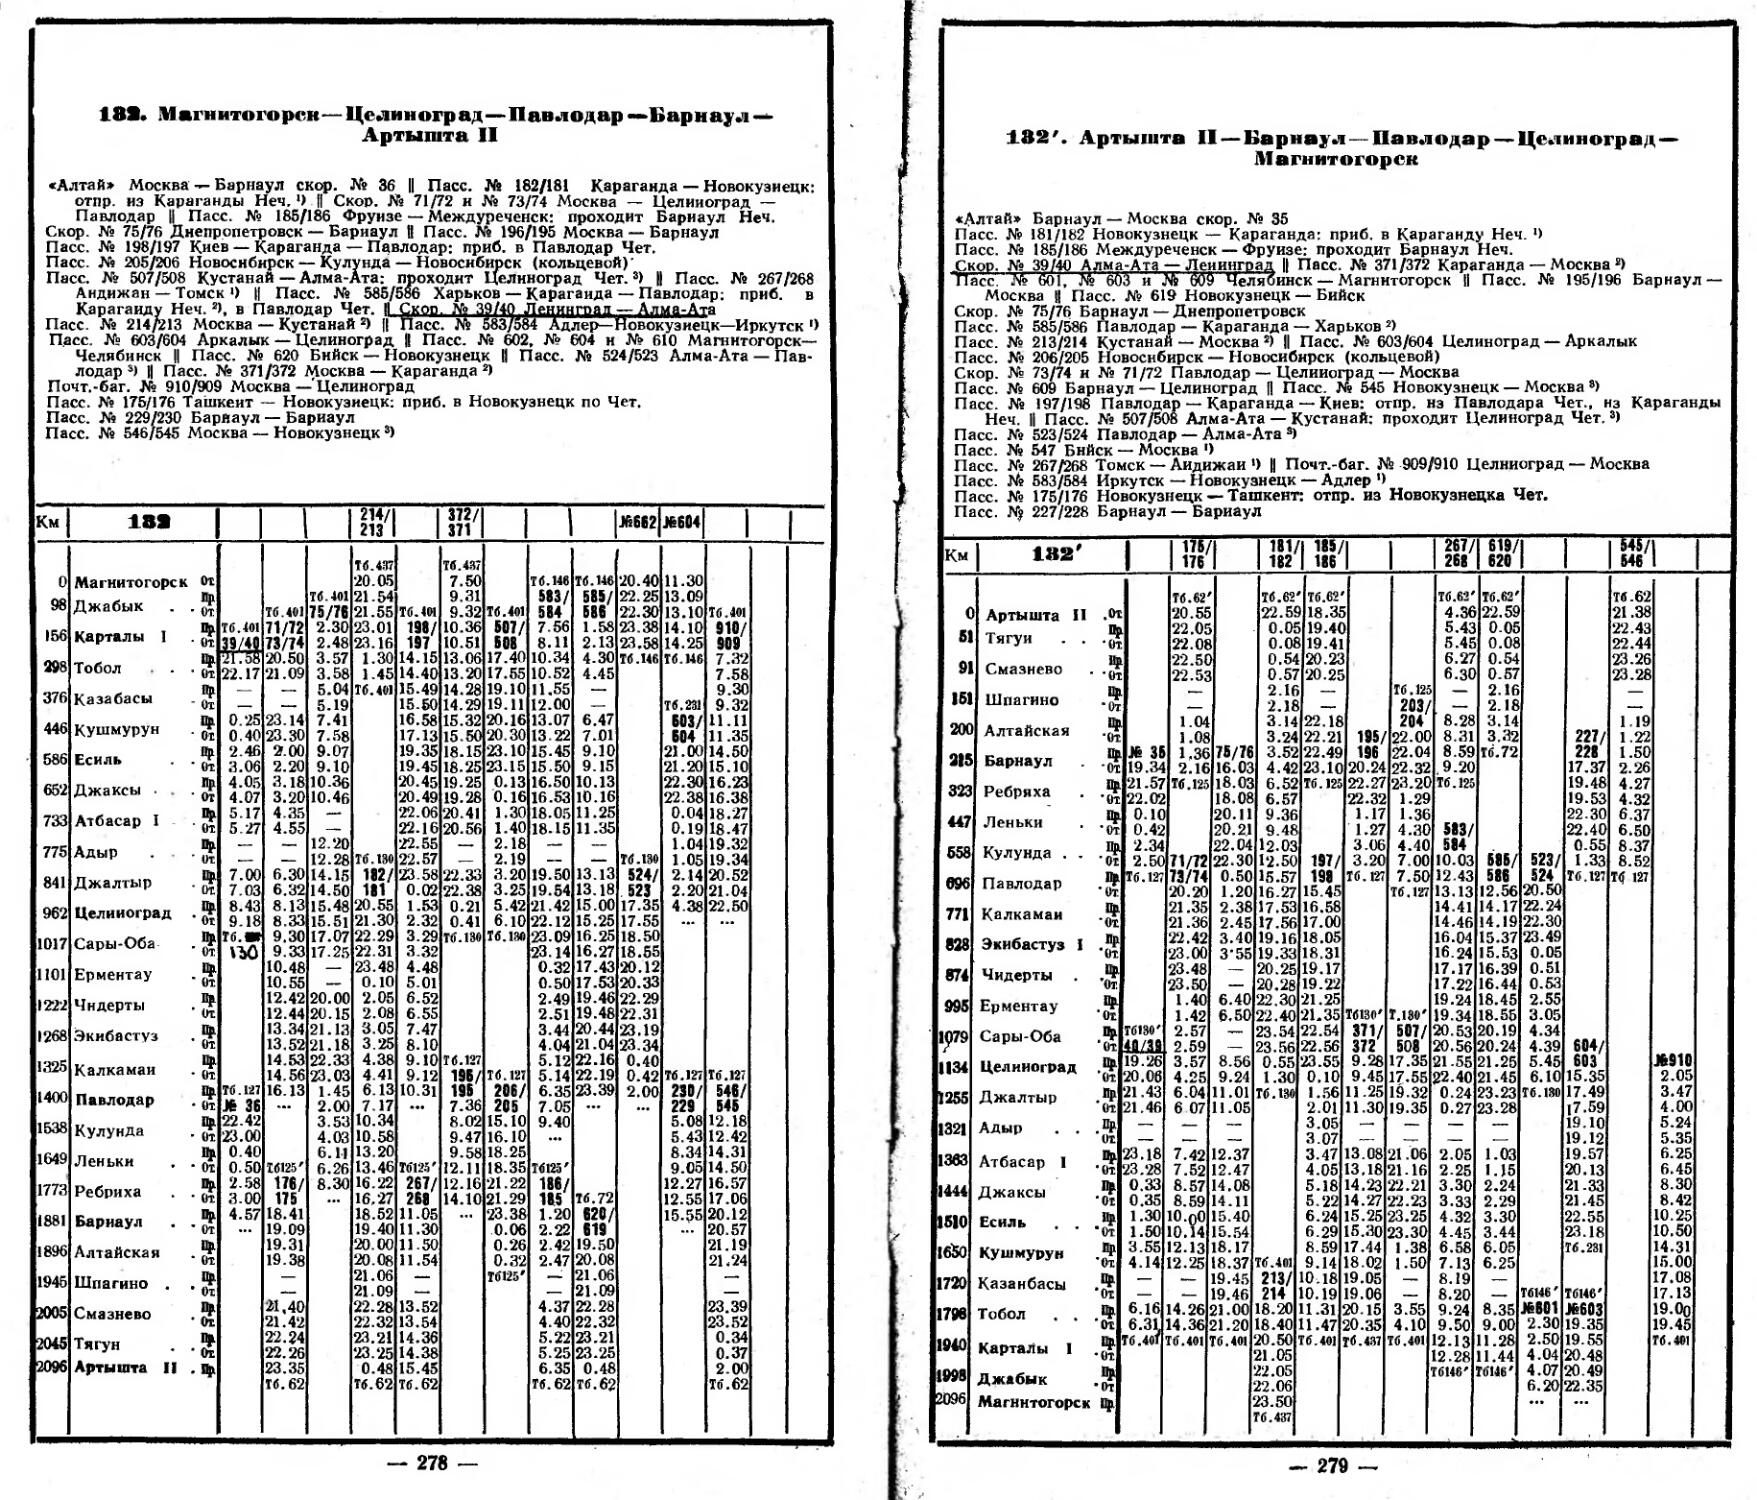 Расписание движения пассажирских поездов по станции Винница 1984.